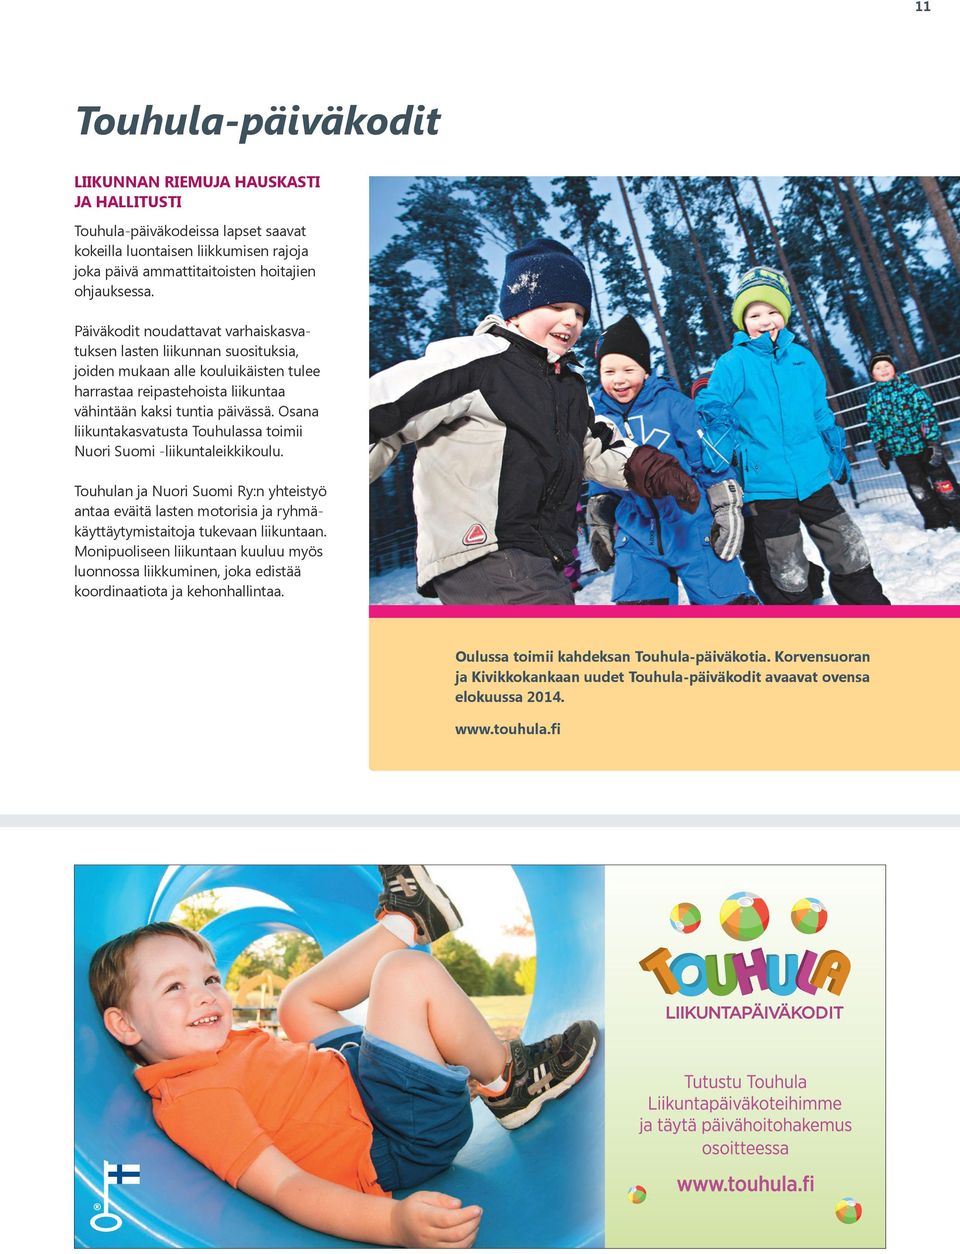 Osana liikuntakasvatusta Touhulassa toimii Nuori Suomi -liikuntaleikkikoulu. Touhulan ja Nuori Suomi Ry:n yhteistyö antaa eväitä lasten motorisia ja ryhmäkäyttäytymistaitoja tukevaan liikuntaan.